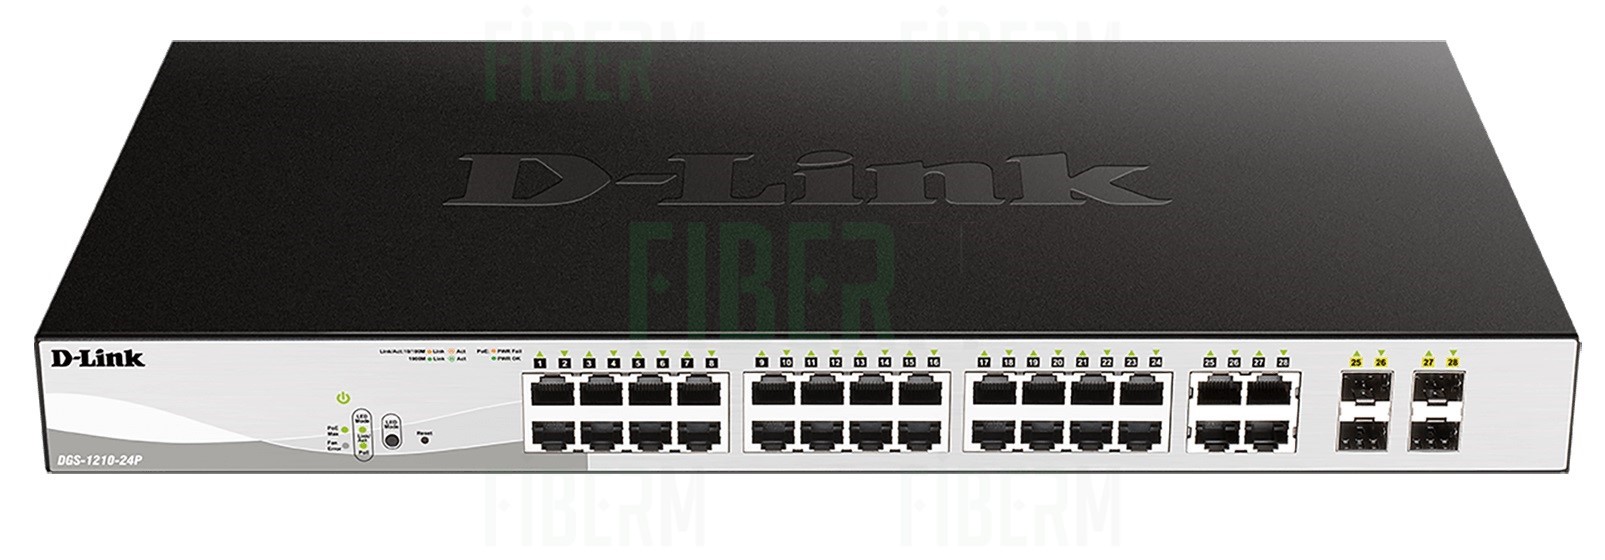 D-LINK DGS-1210-24P Switch Smart 24 x 10/100/1000 PoE + 4 x SFP